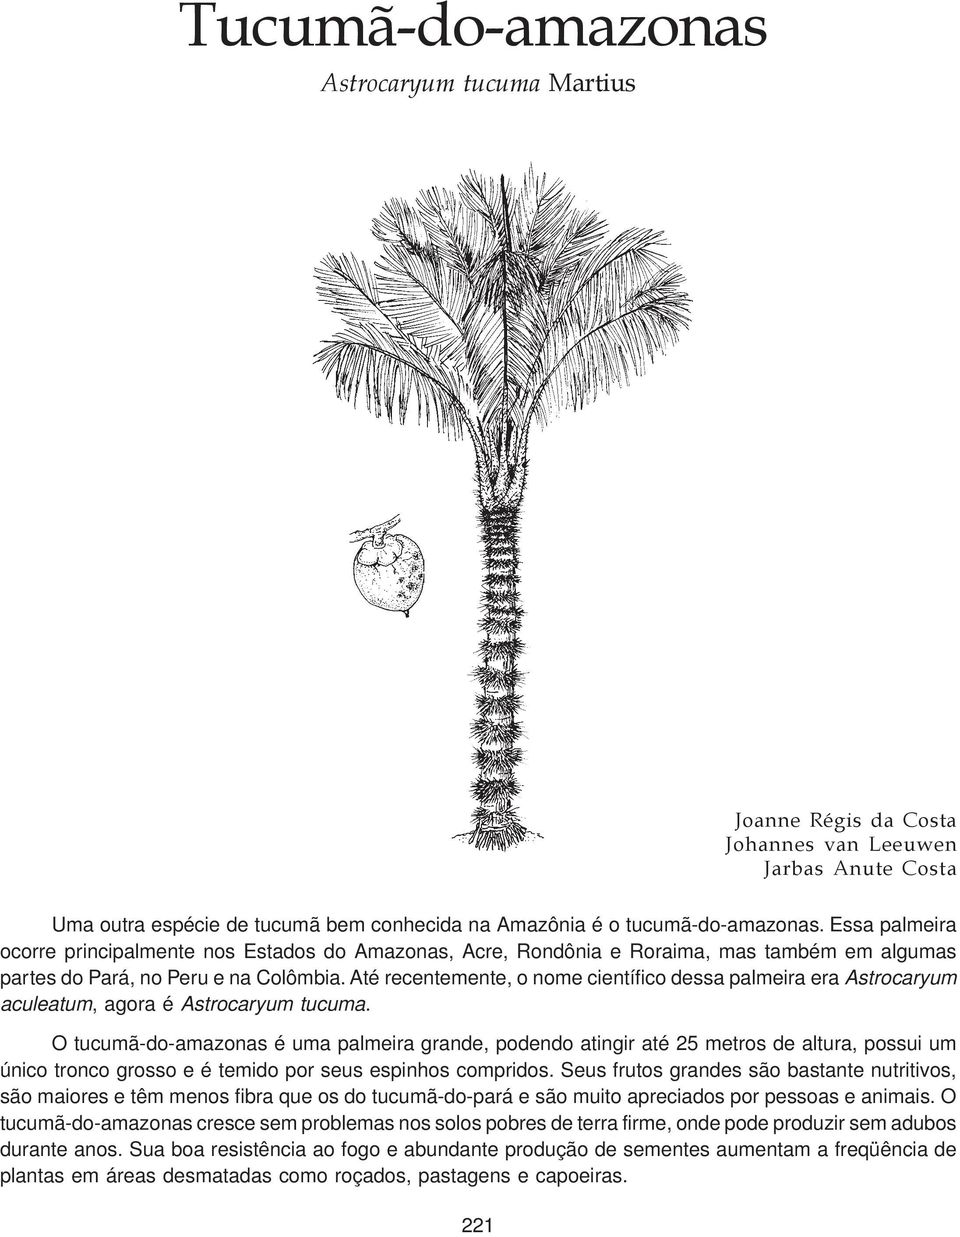 Até recentemente, o nome científico dessa palmeira era Astrocaryum aculeatum, agora é Astrocaryum tucuma.